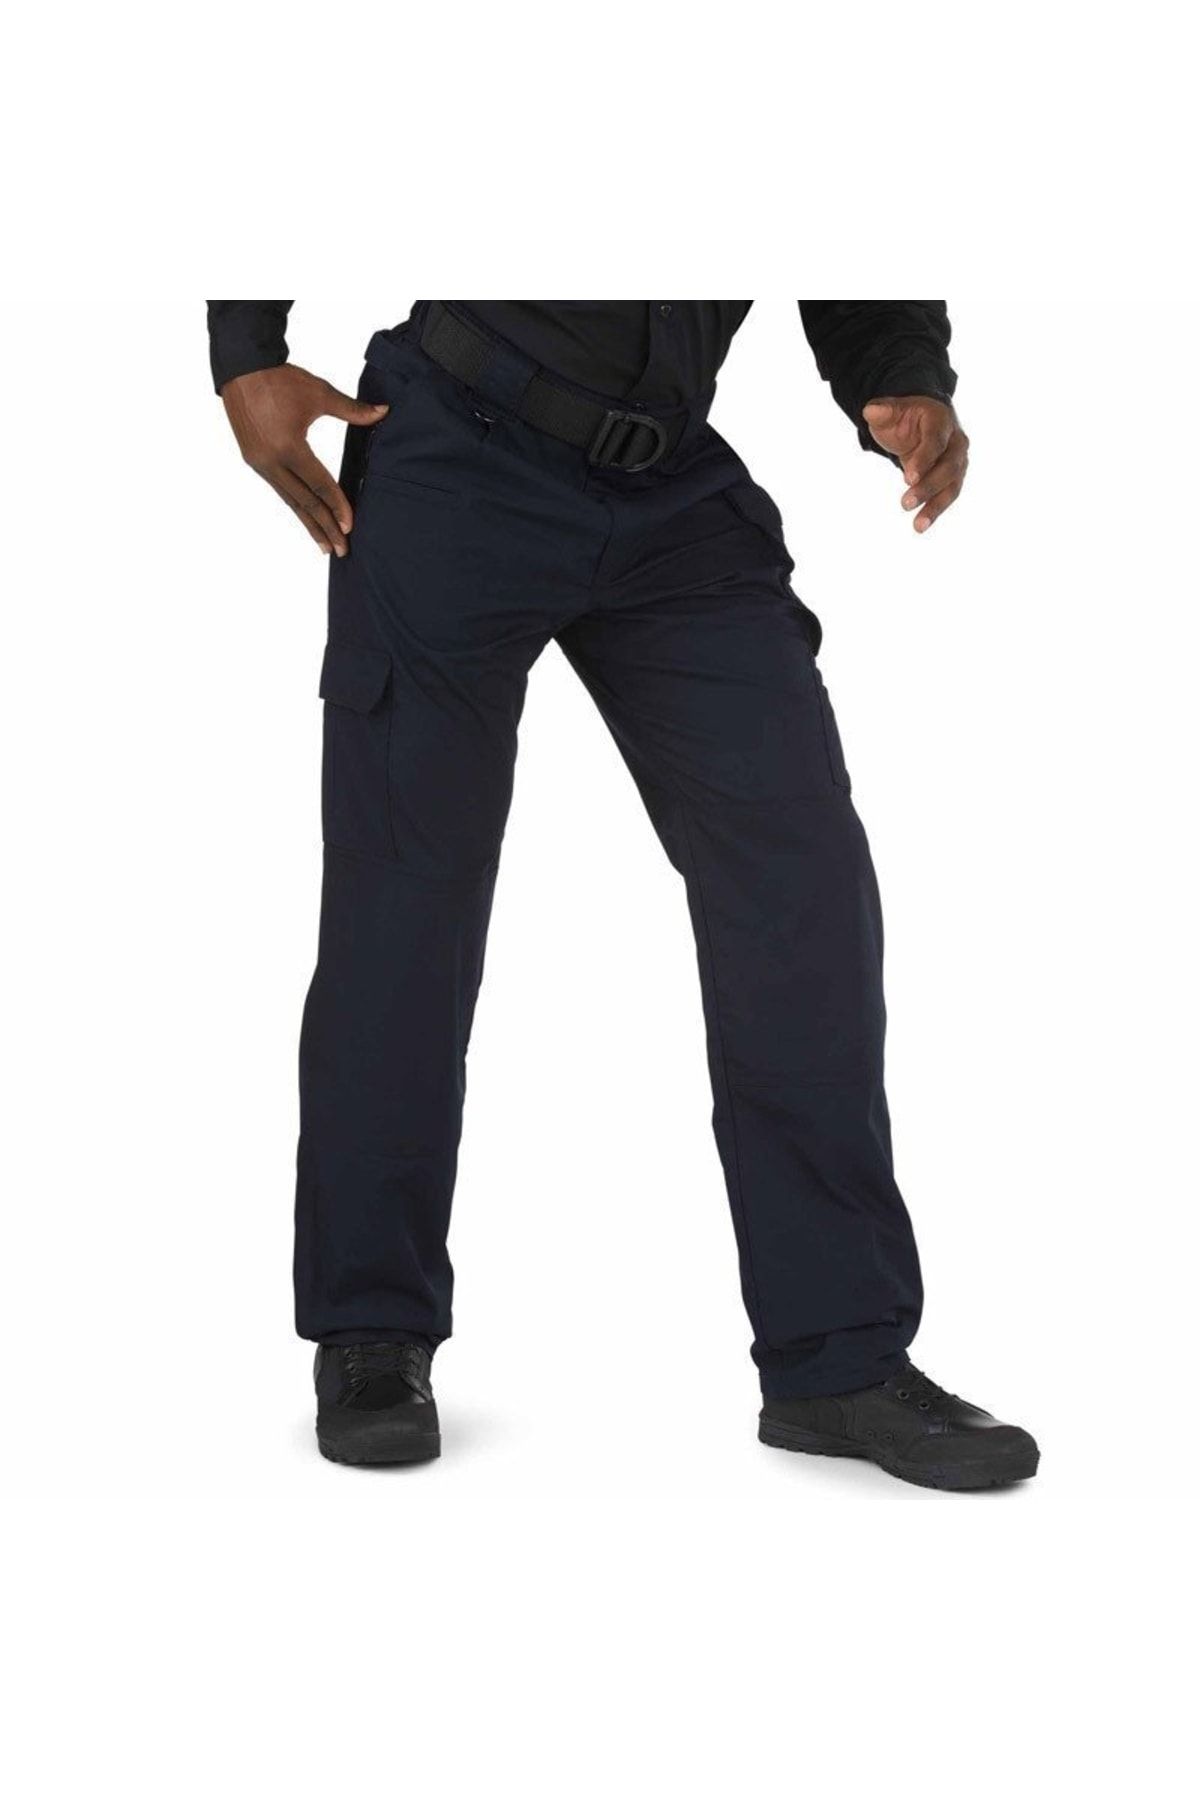 5.11 Tactical Men's Taclite Pro Pants